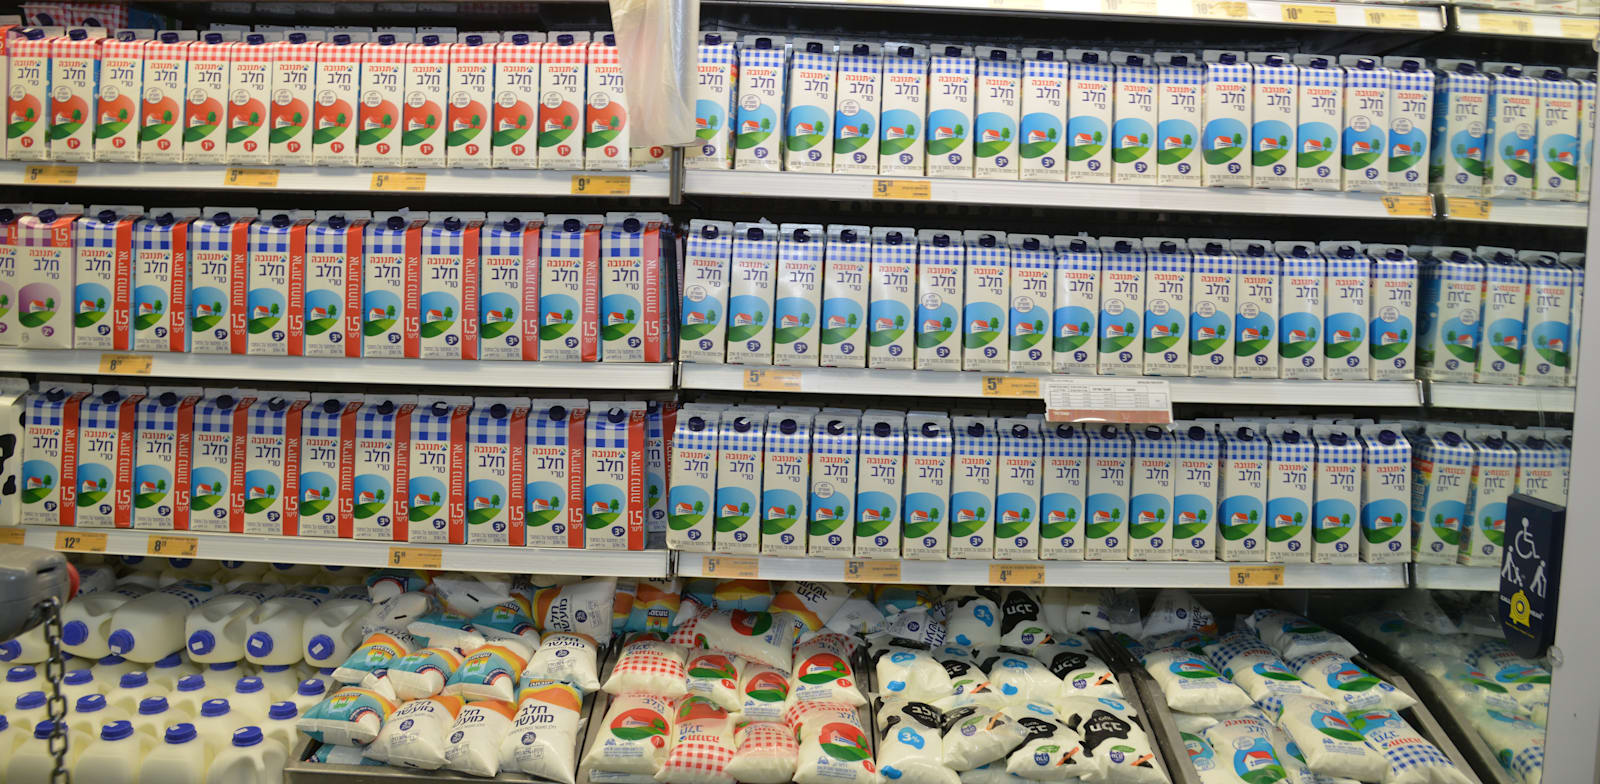 מדפי חלב בסופרמרקט / צילום: תמר מצפי